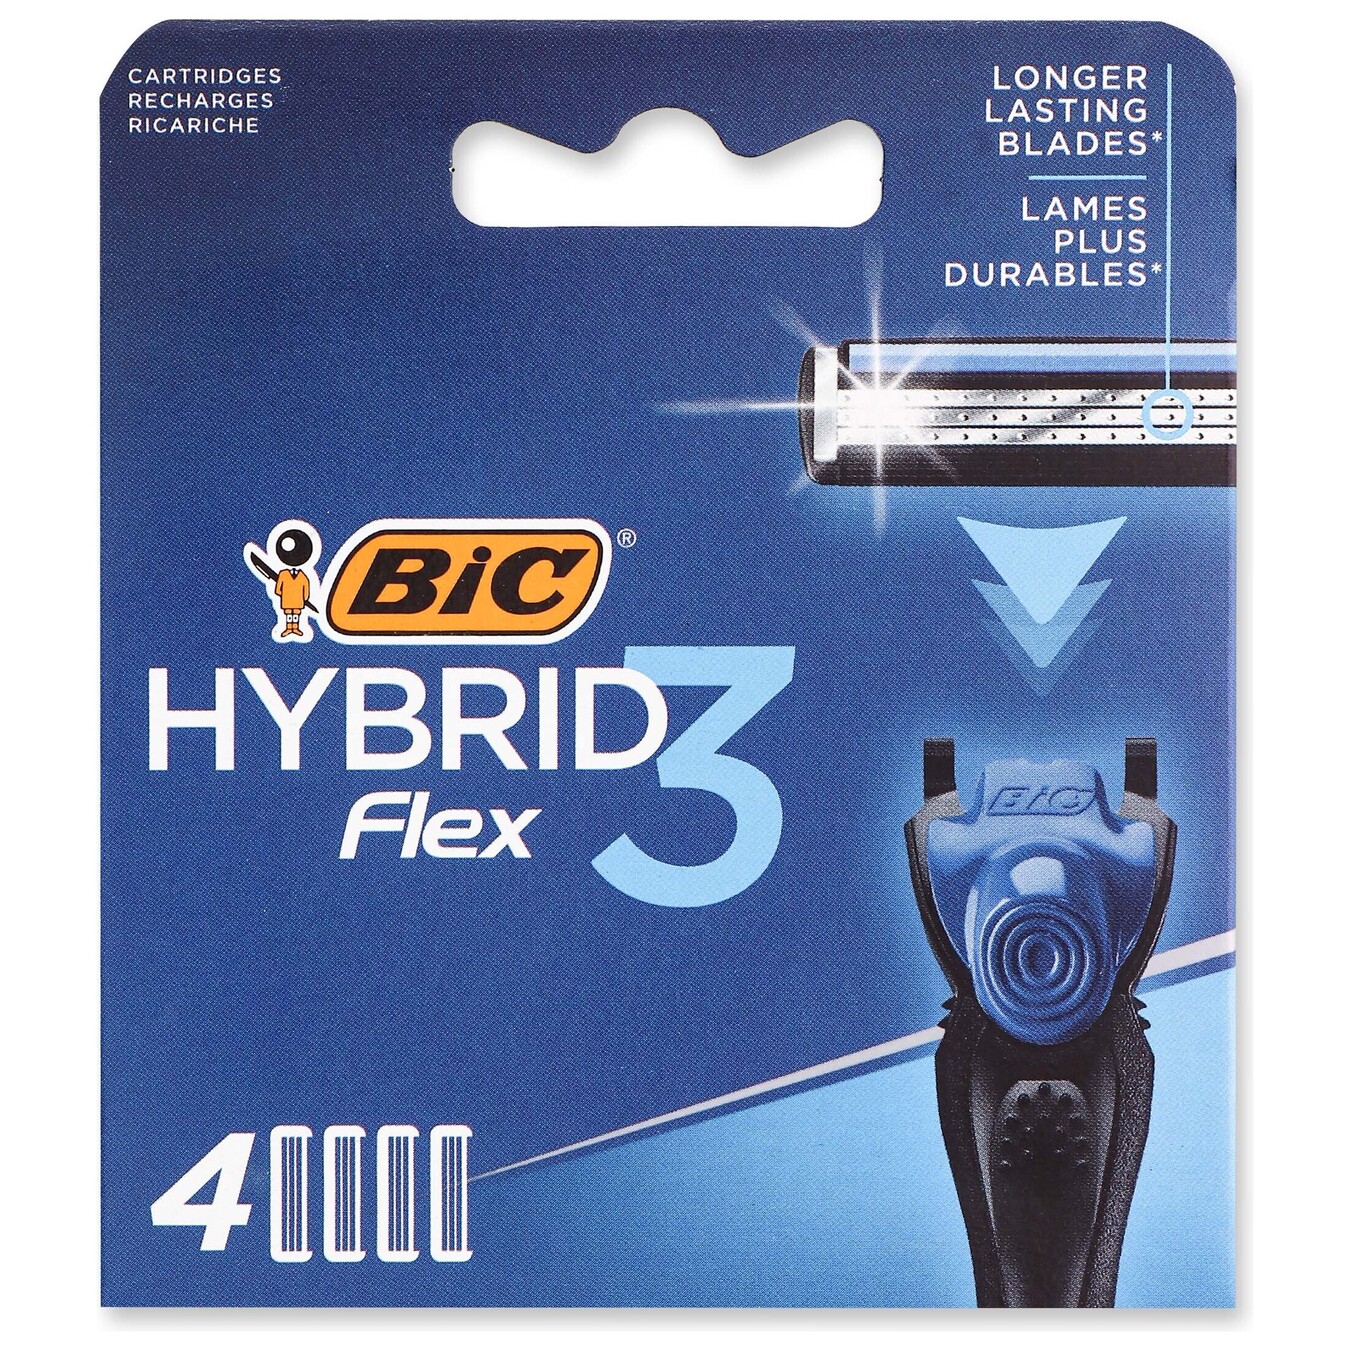 Картридж для бритья BIC Hybrid 3 Flex 4 шт